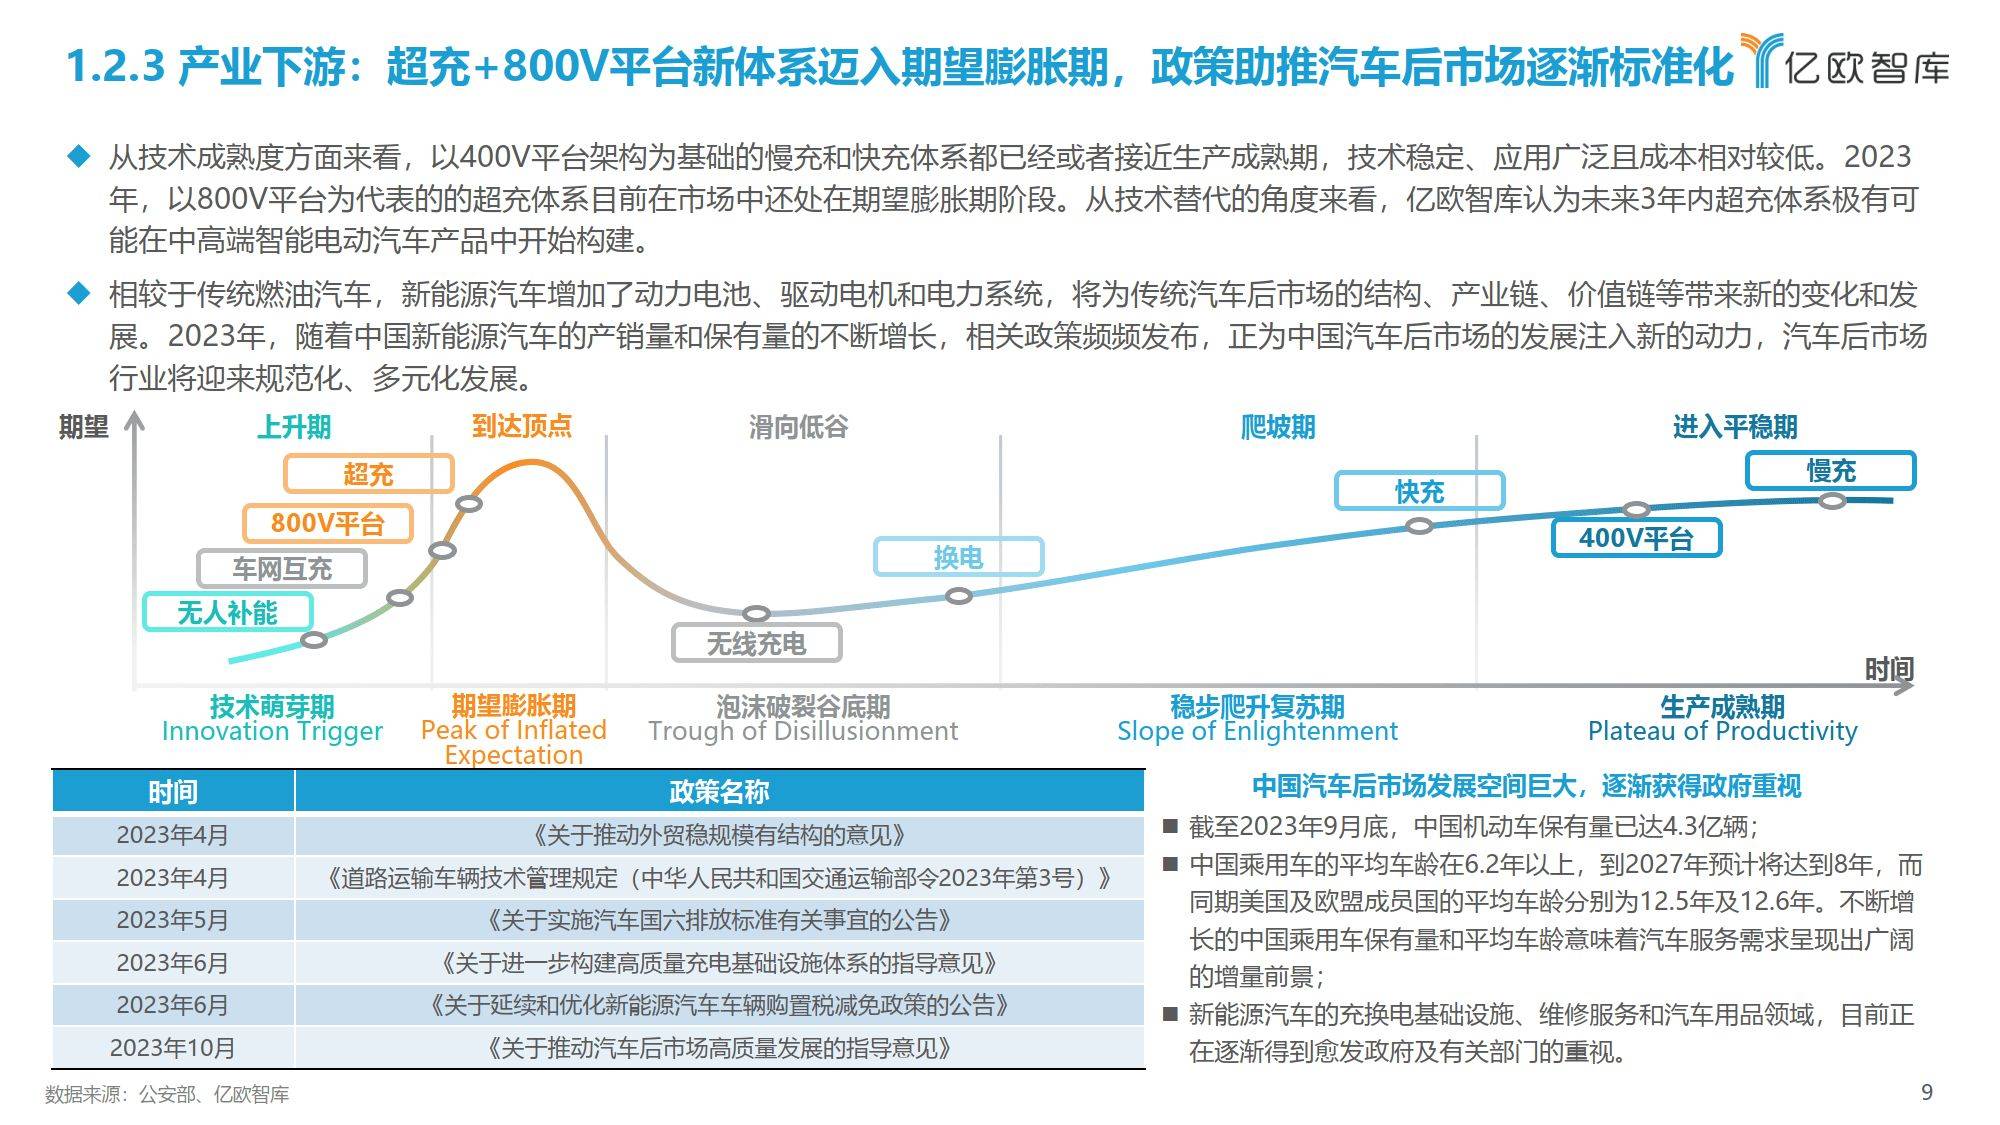 中国智能电动汽车行业产业发展洞察研究报告(附下载方式)